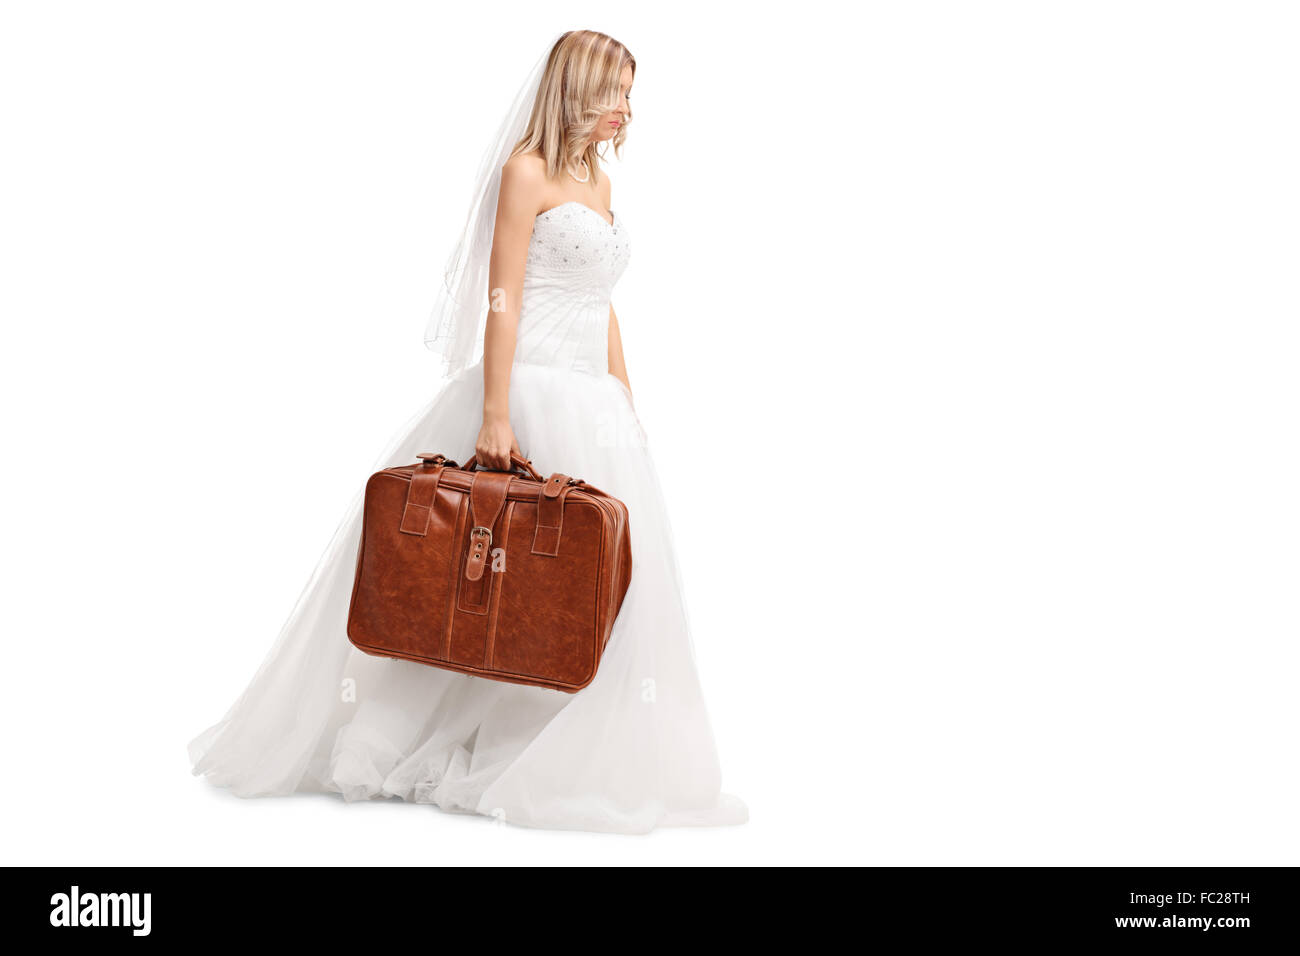 Triste jeune mariée dans une robe de mariée blanche la marche et tenant une valise marron isolé sur fond blanc Banque D'Images